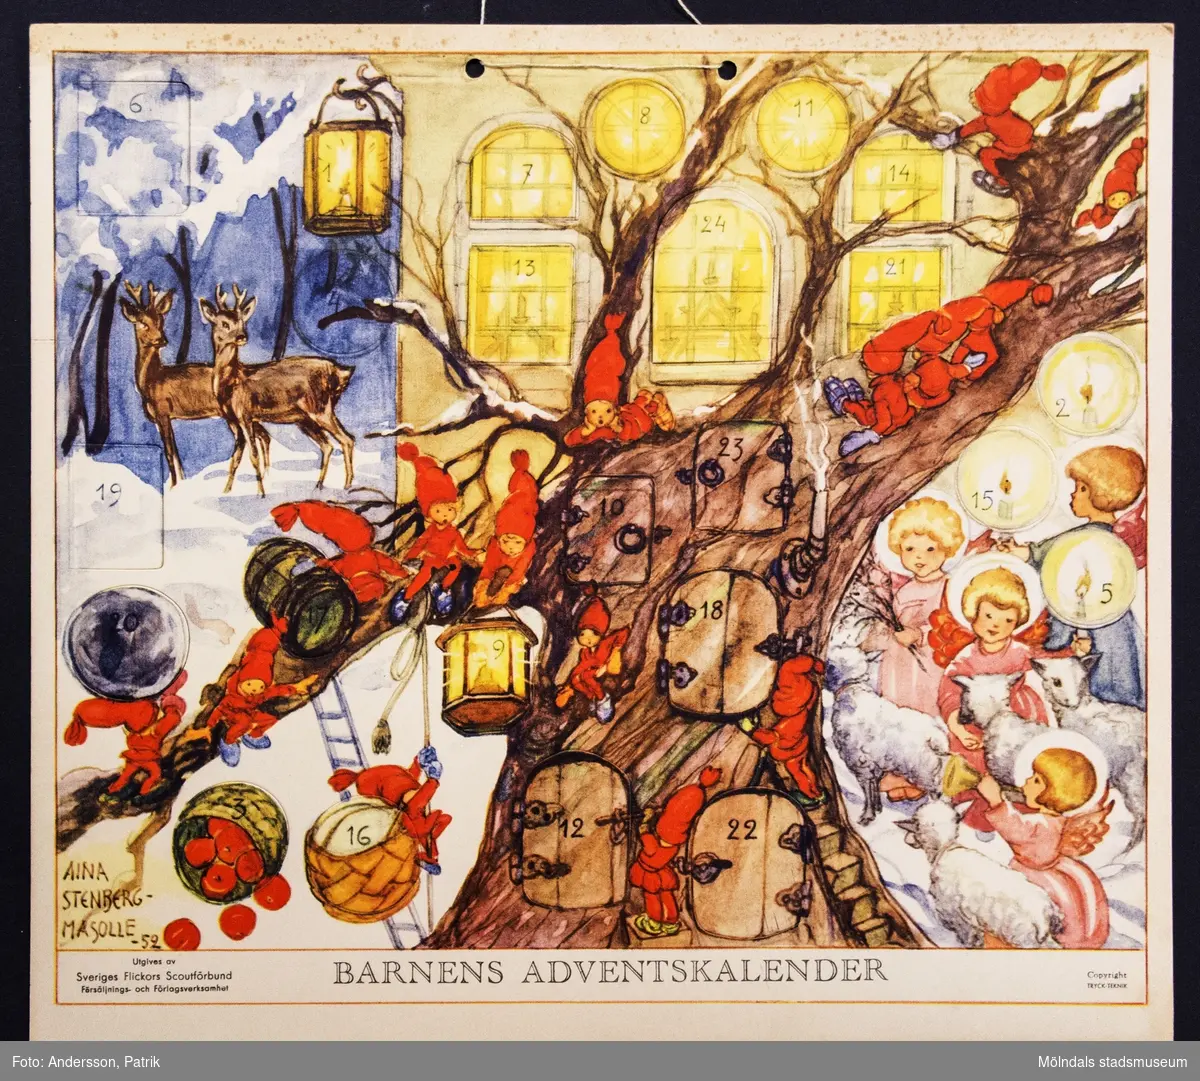 Barnens adventskalender från december 1952 utgiven av Sveriges Flickors Scutförbund. Motivet är tecknat av Aina Stenberg - Masolle. Kalendern fick Gunilla Ferm tillsammans med sina systrar Birgitta och Kristina.
I övre kanten på kalendern finns två hål med ett snöre för upphängning.